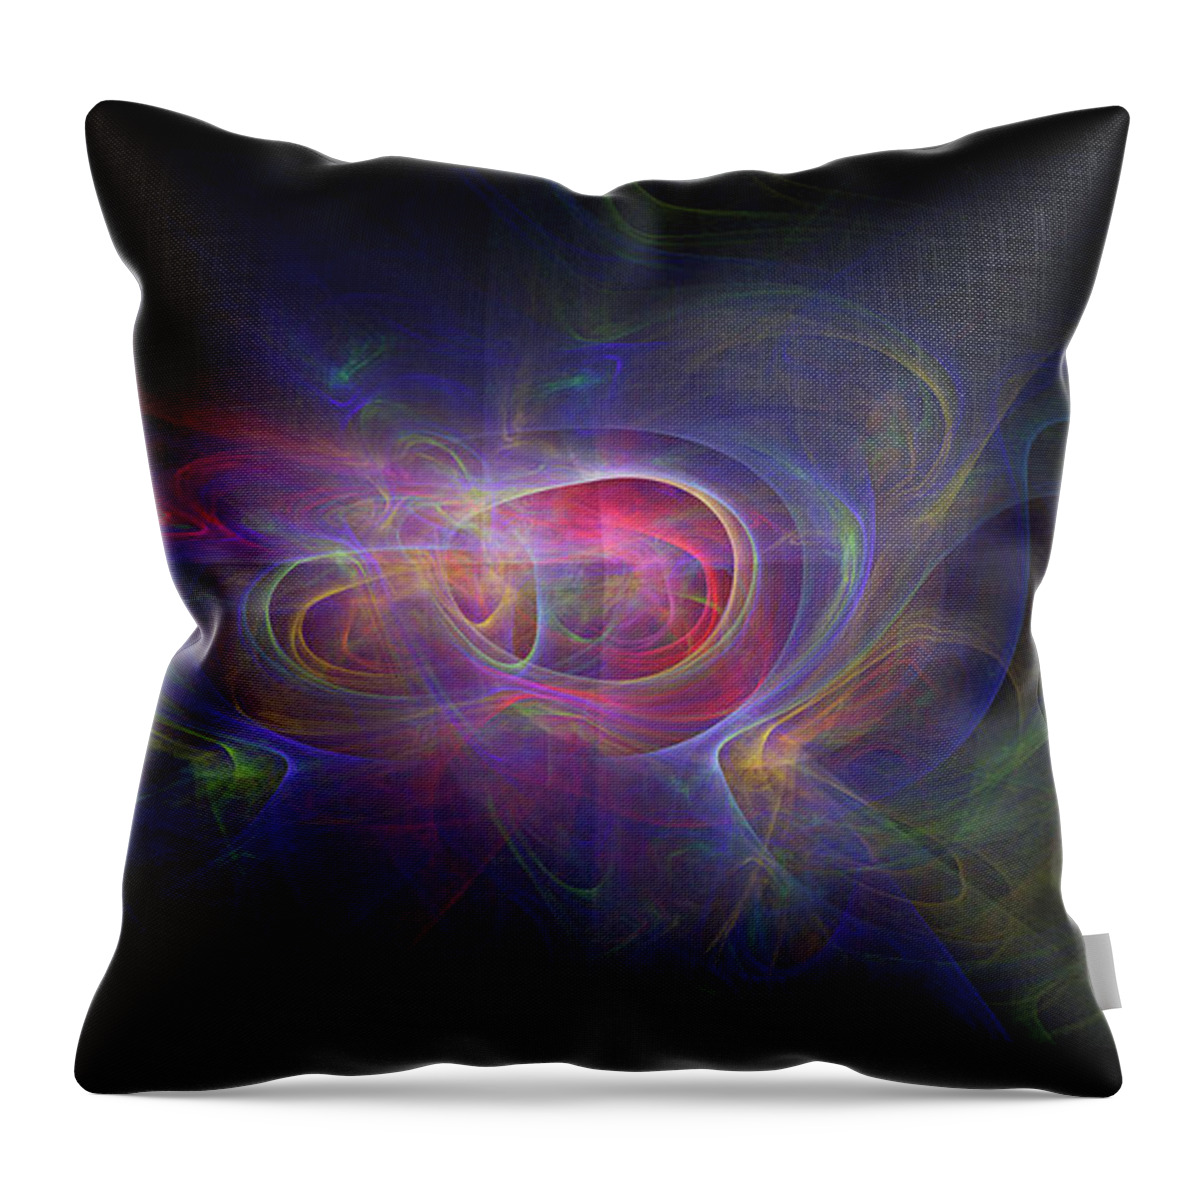 Rick Drent Throw Pillow featuring the digital art Aurora by Rick Drent